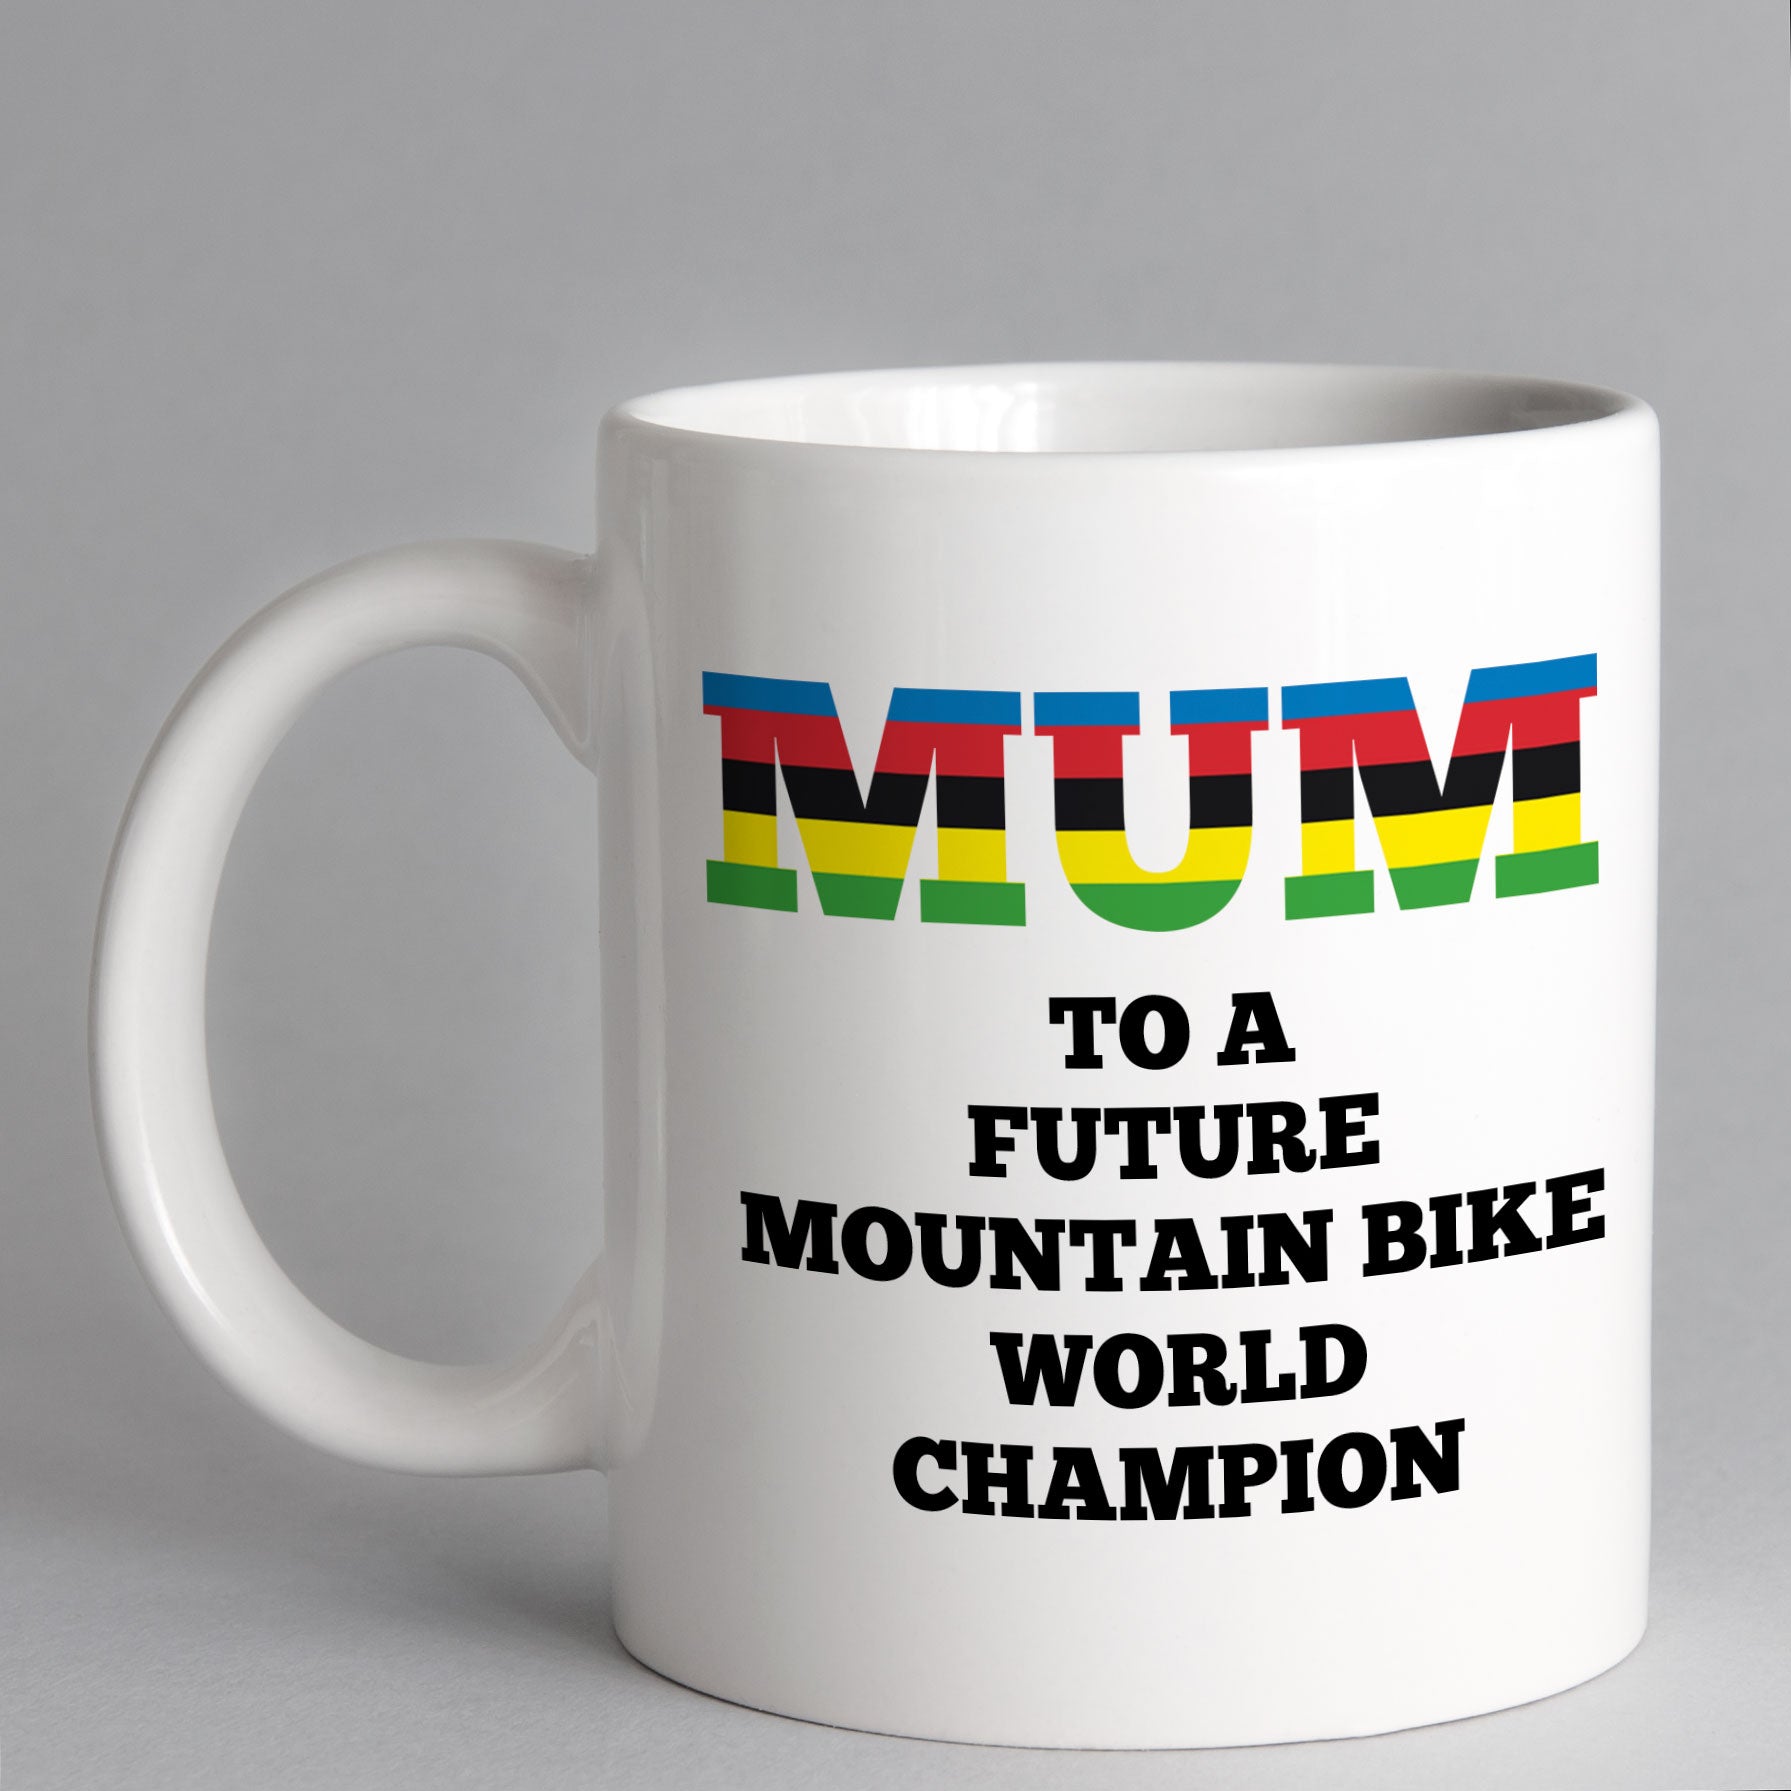 Mum To A Future Mountain Bike World Champion Mug